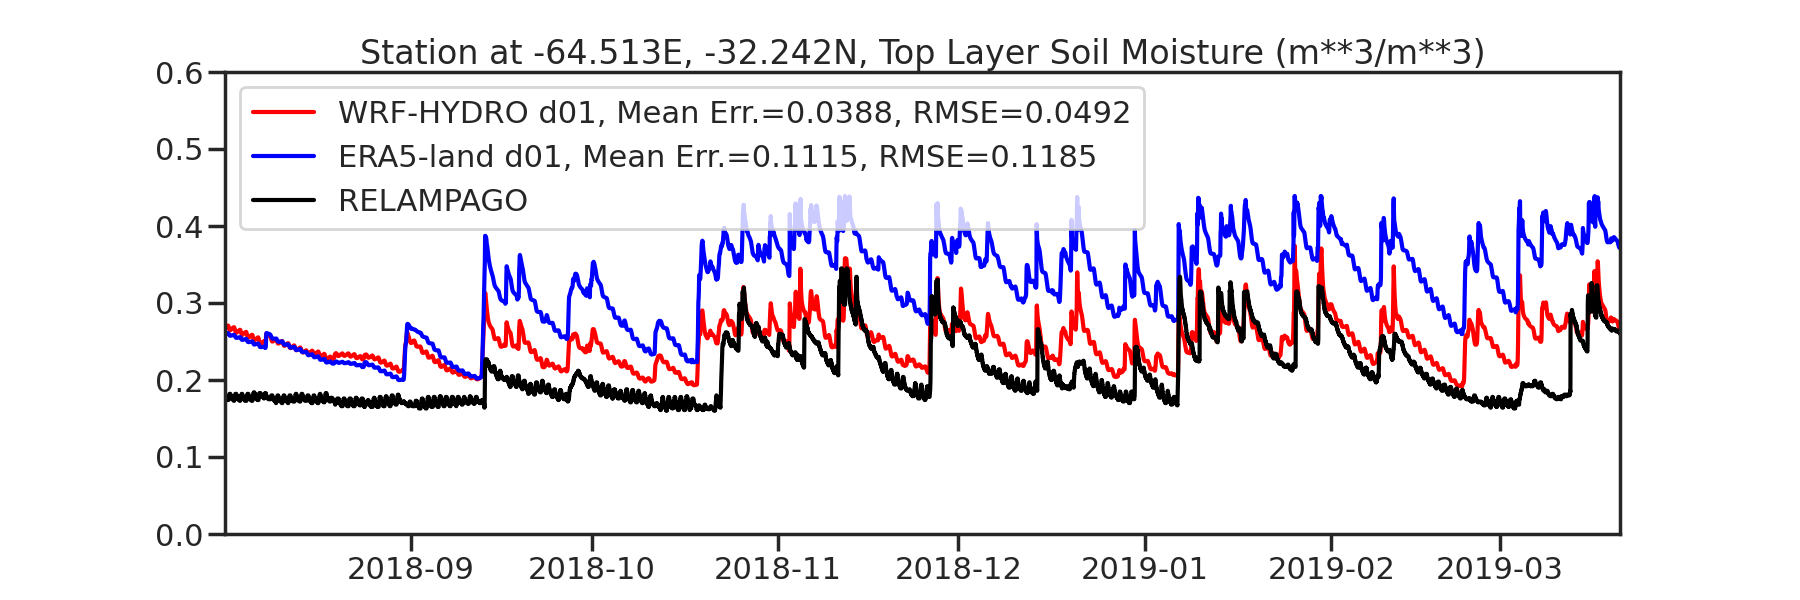 Soil moisture -64.513E -32.242N